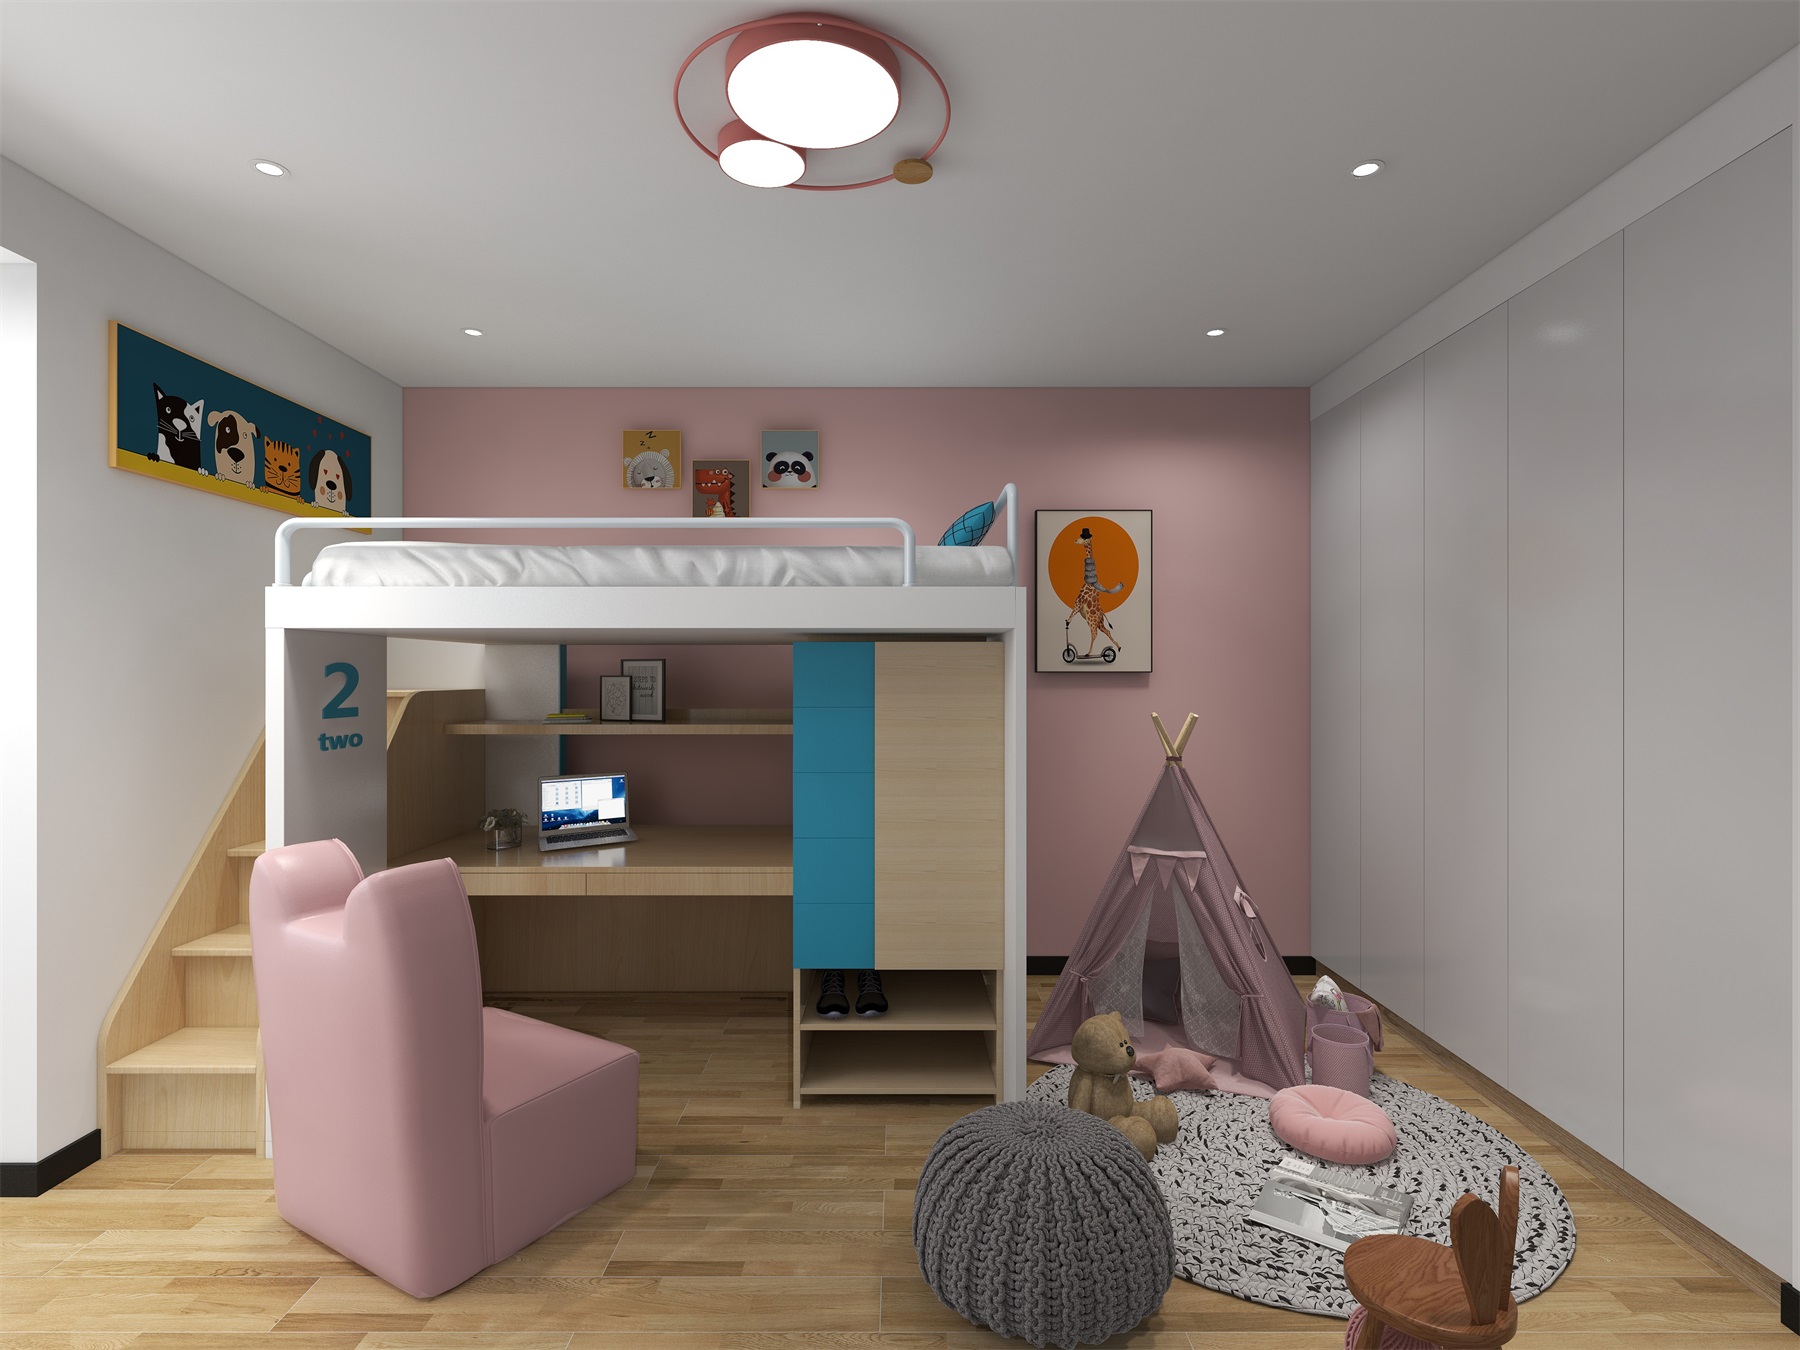 儿童房配色鲜明,高低床的使用,童趣软装融入,都表现出温软有质感的